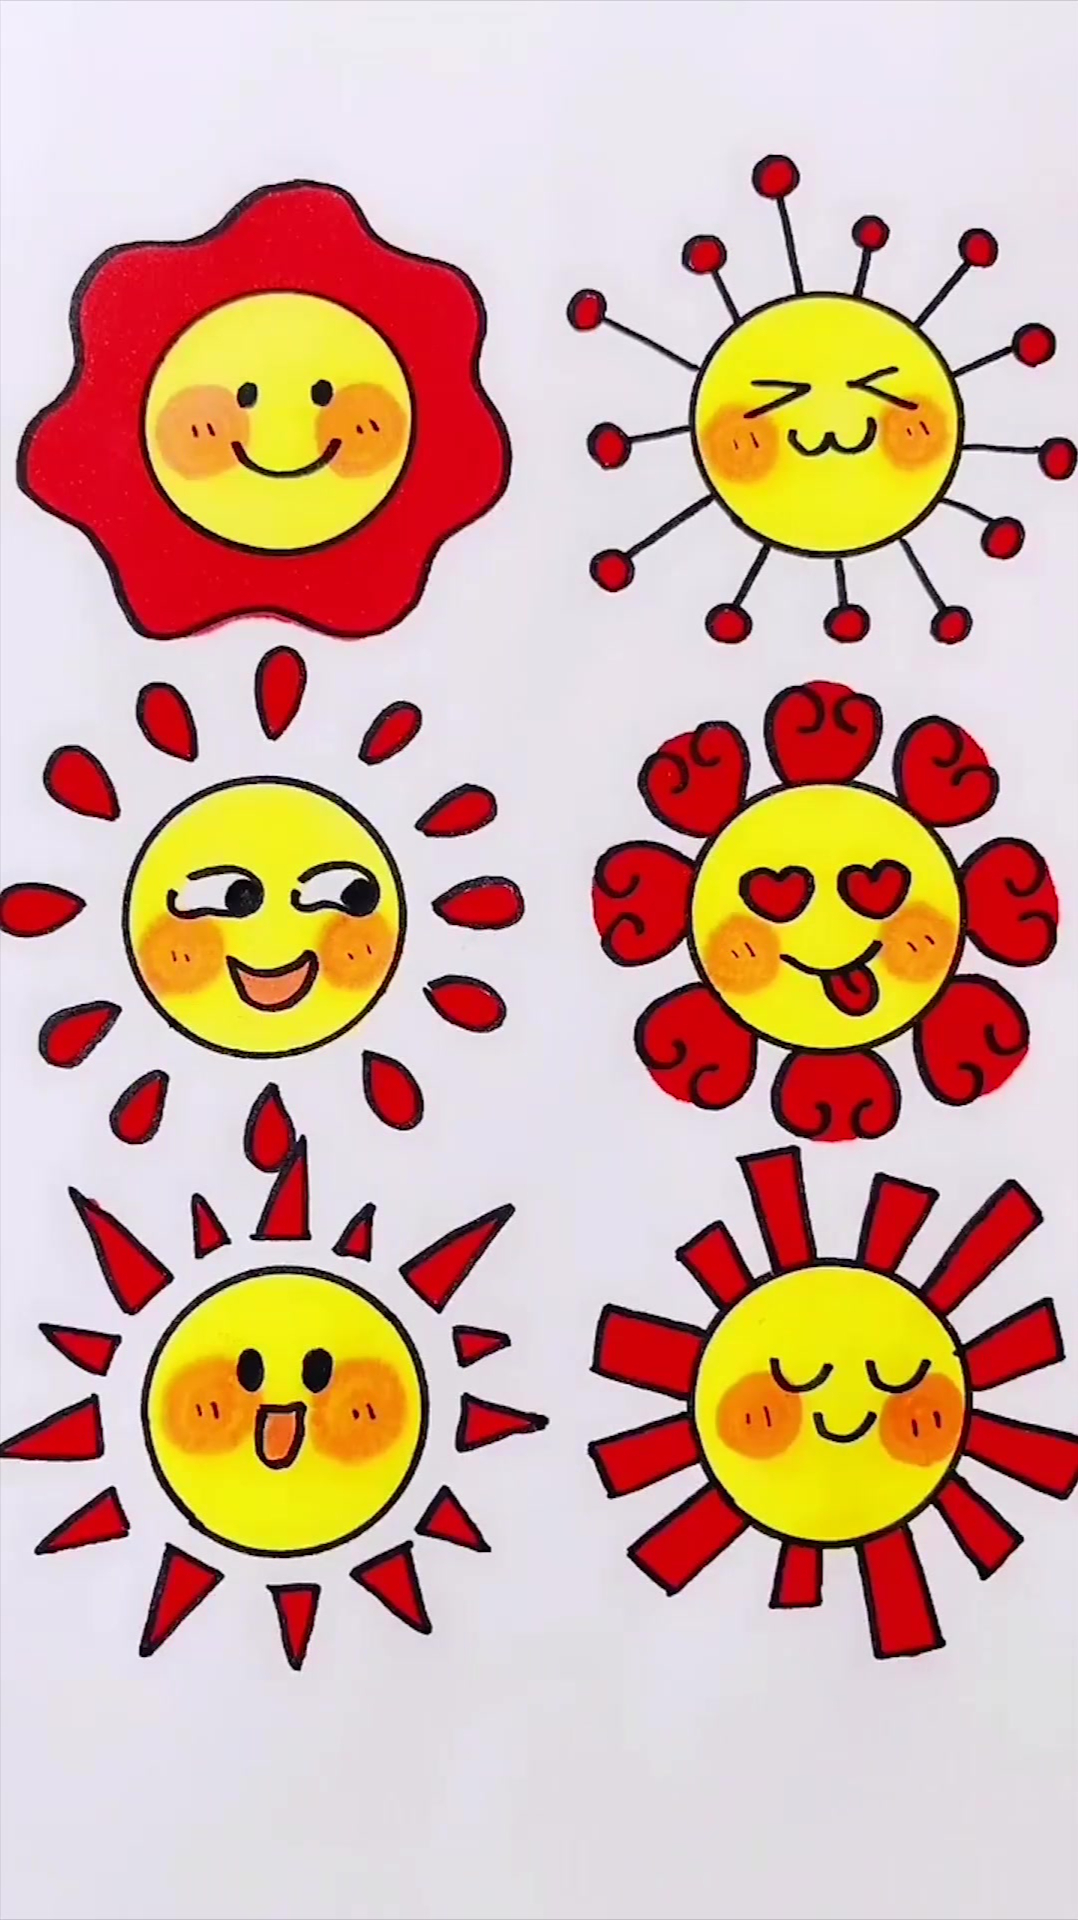 彩色的太阳简笔画可爱图片